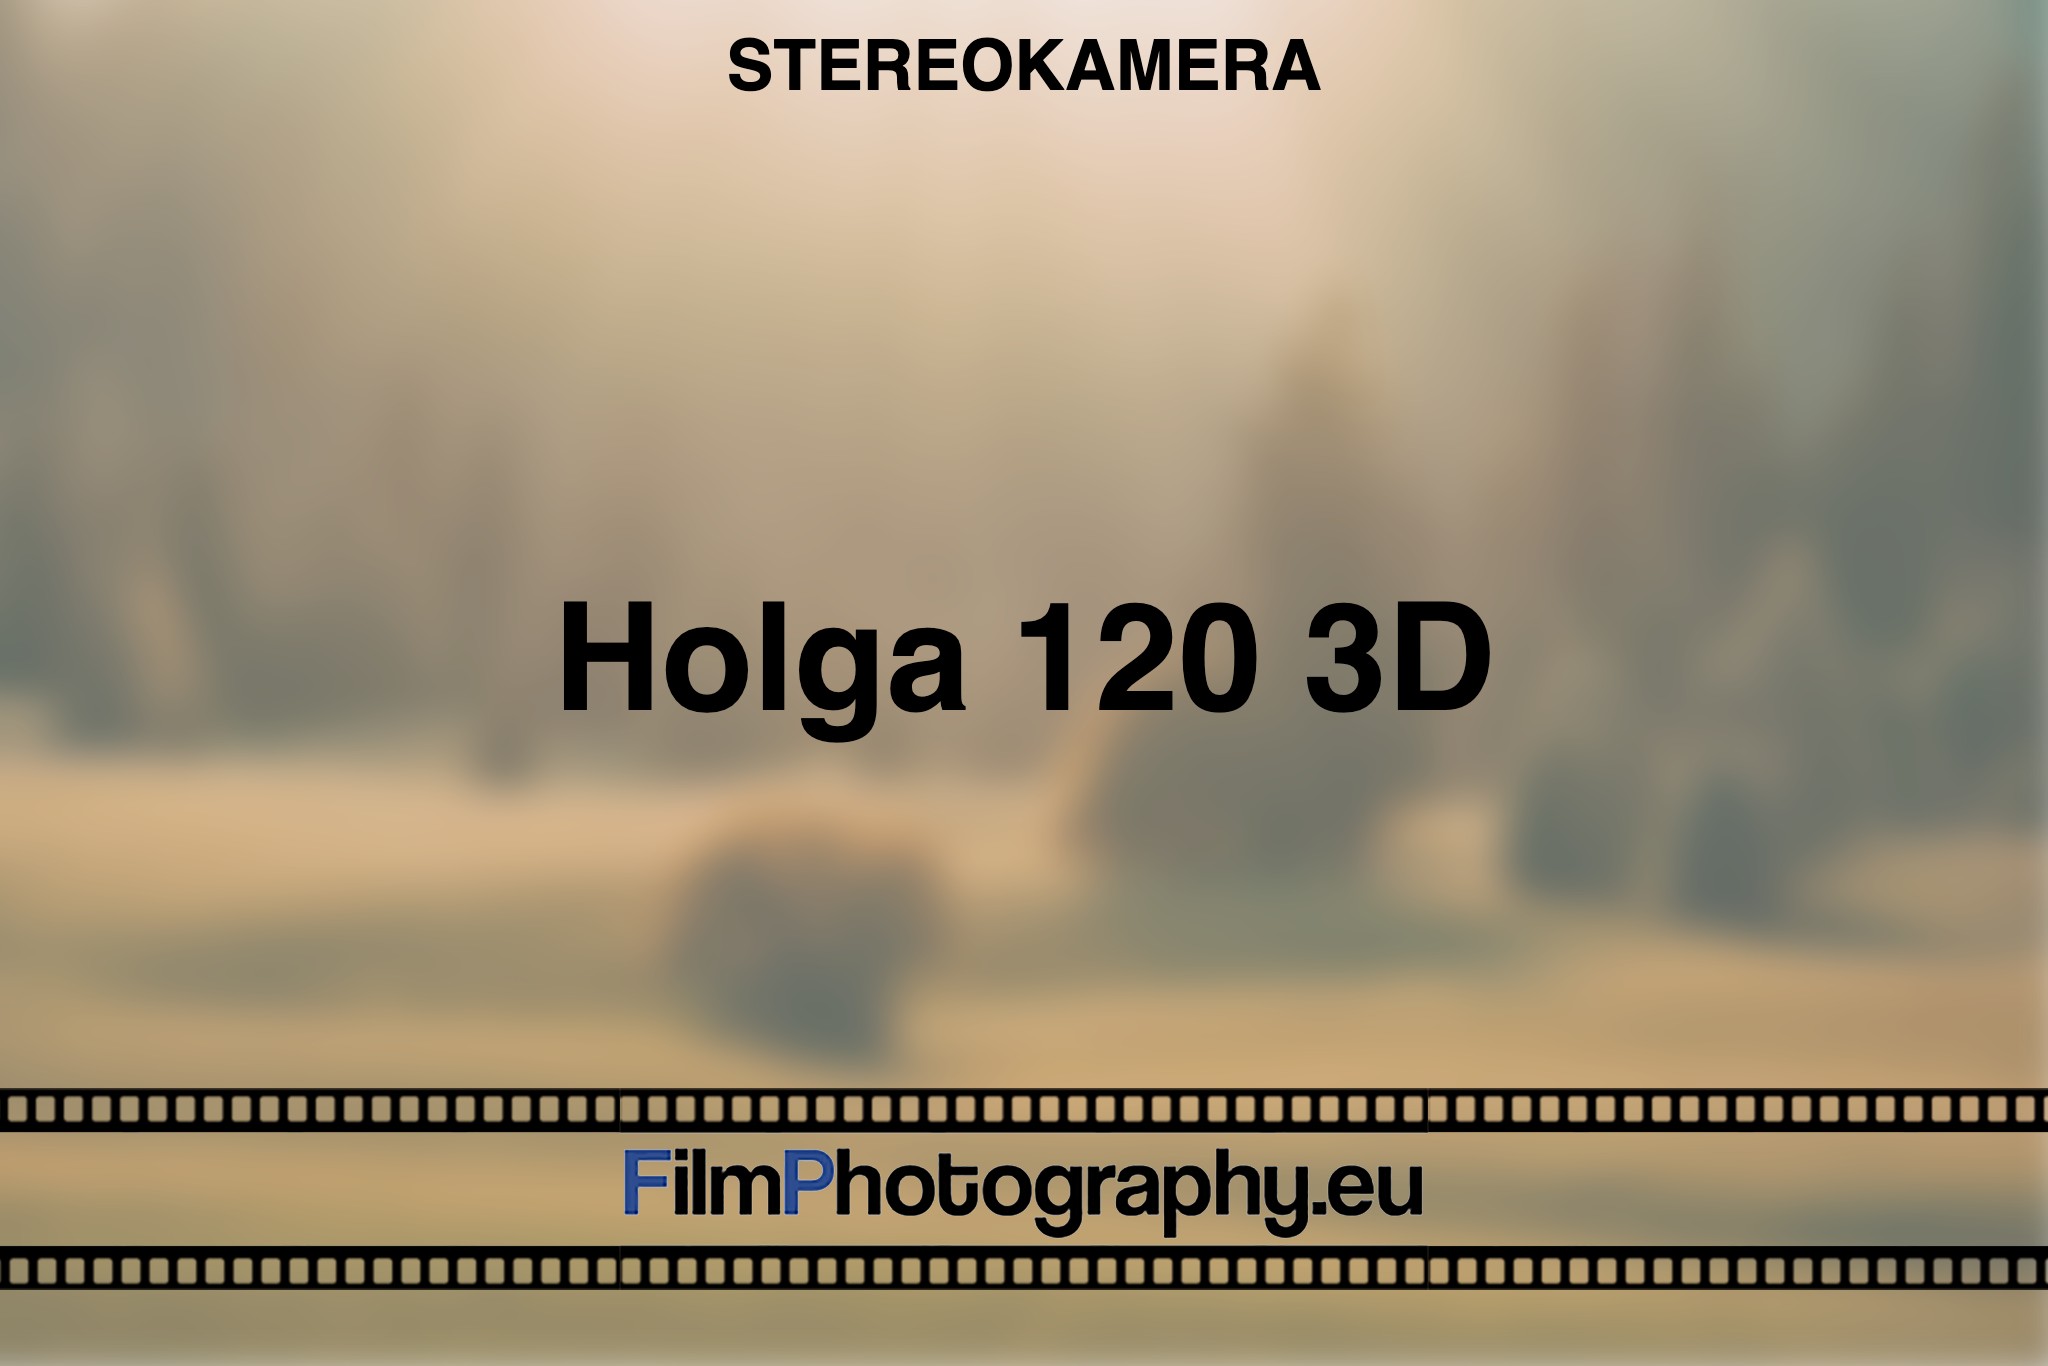 holga-120-3d-stereokamera-bnv